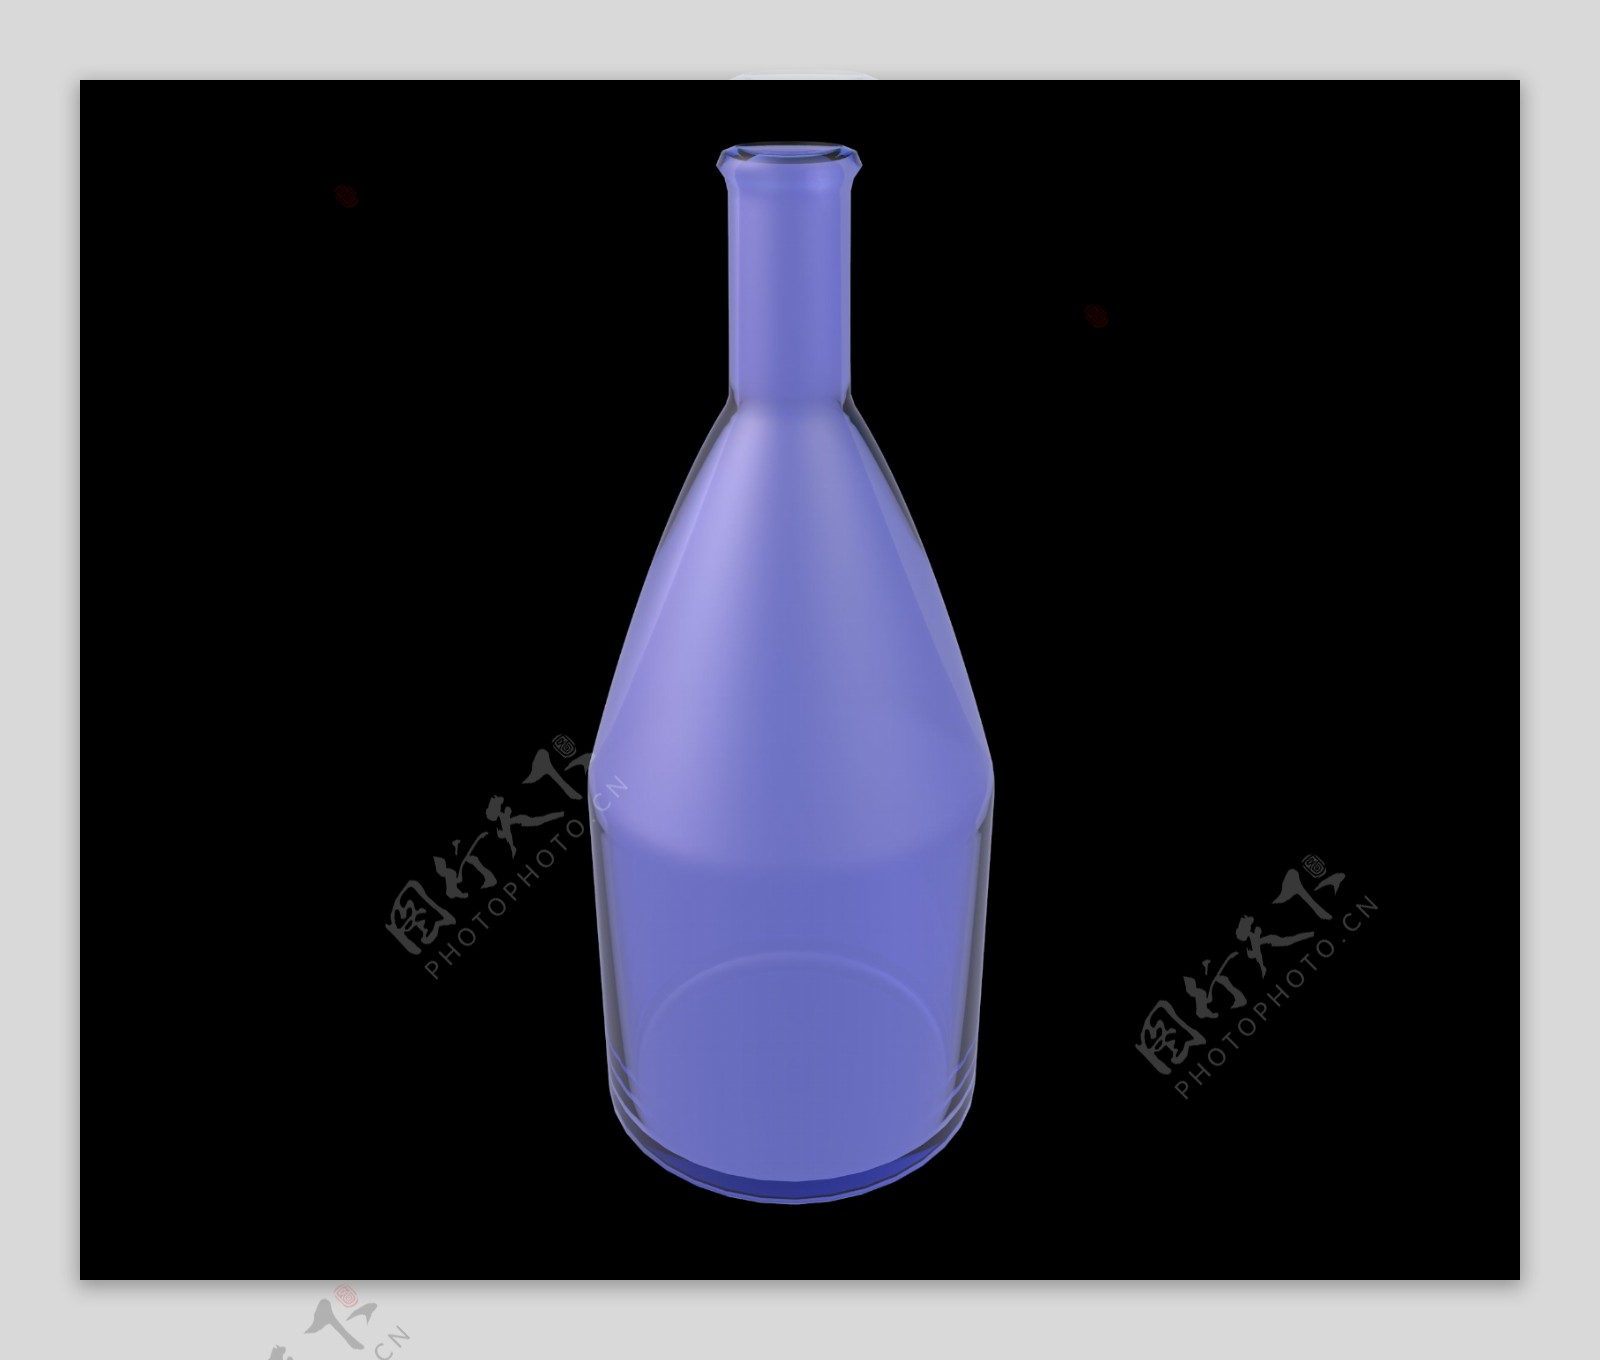 精美紫色玻璃瓶